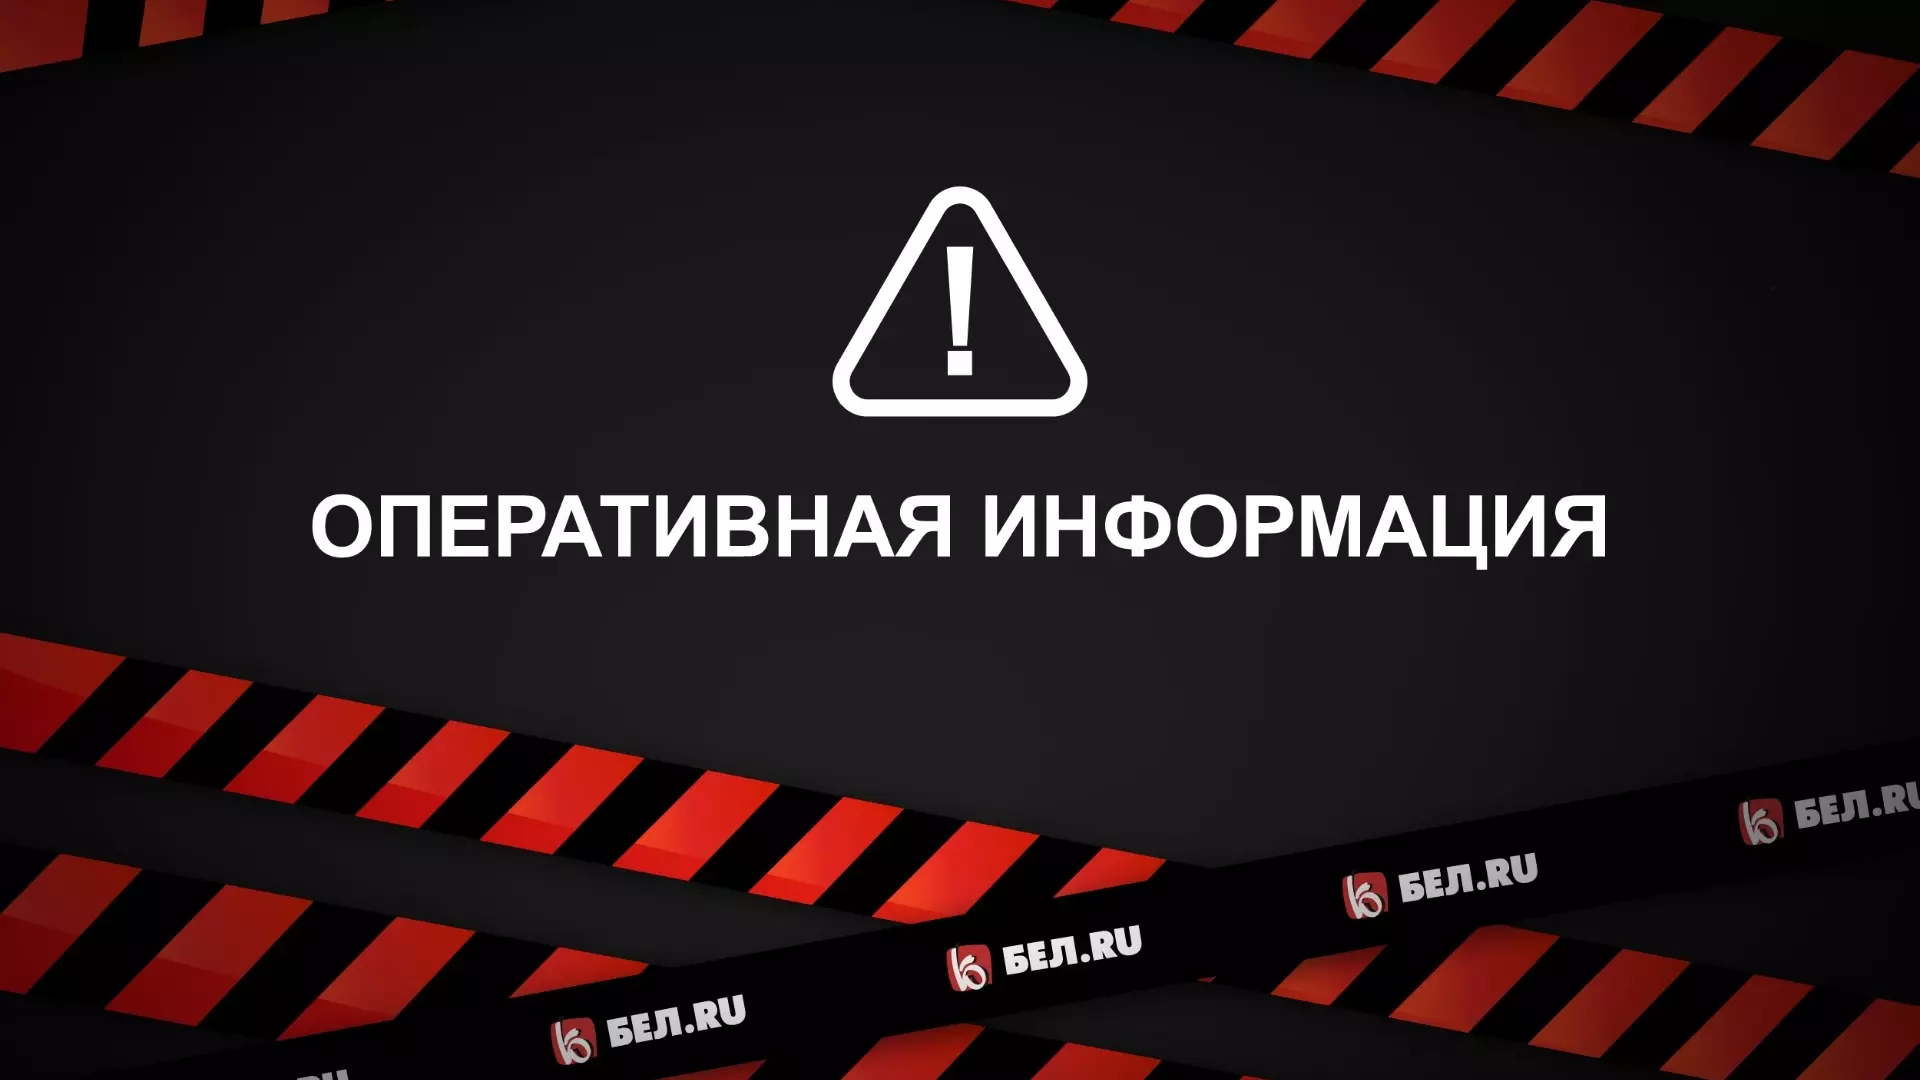 Ракетную опасность второй раз за сутки объявили в Белгороде